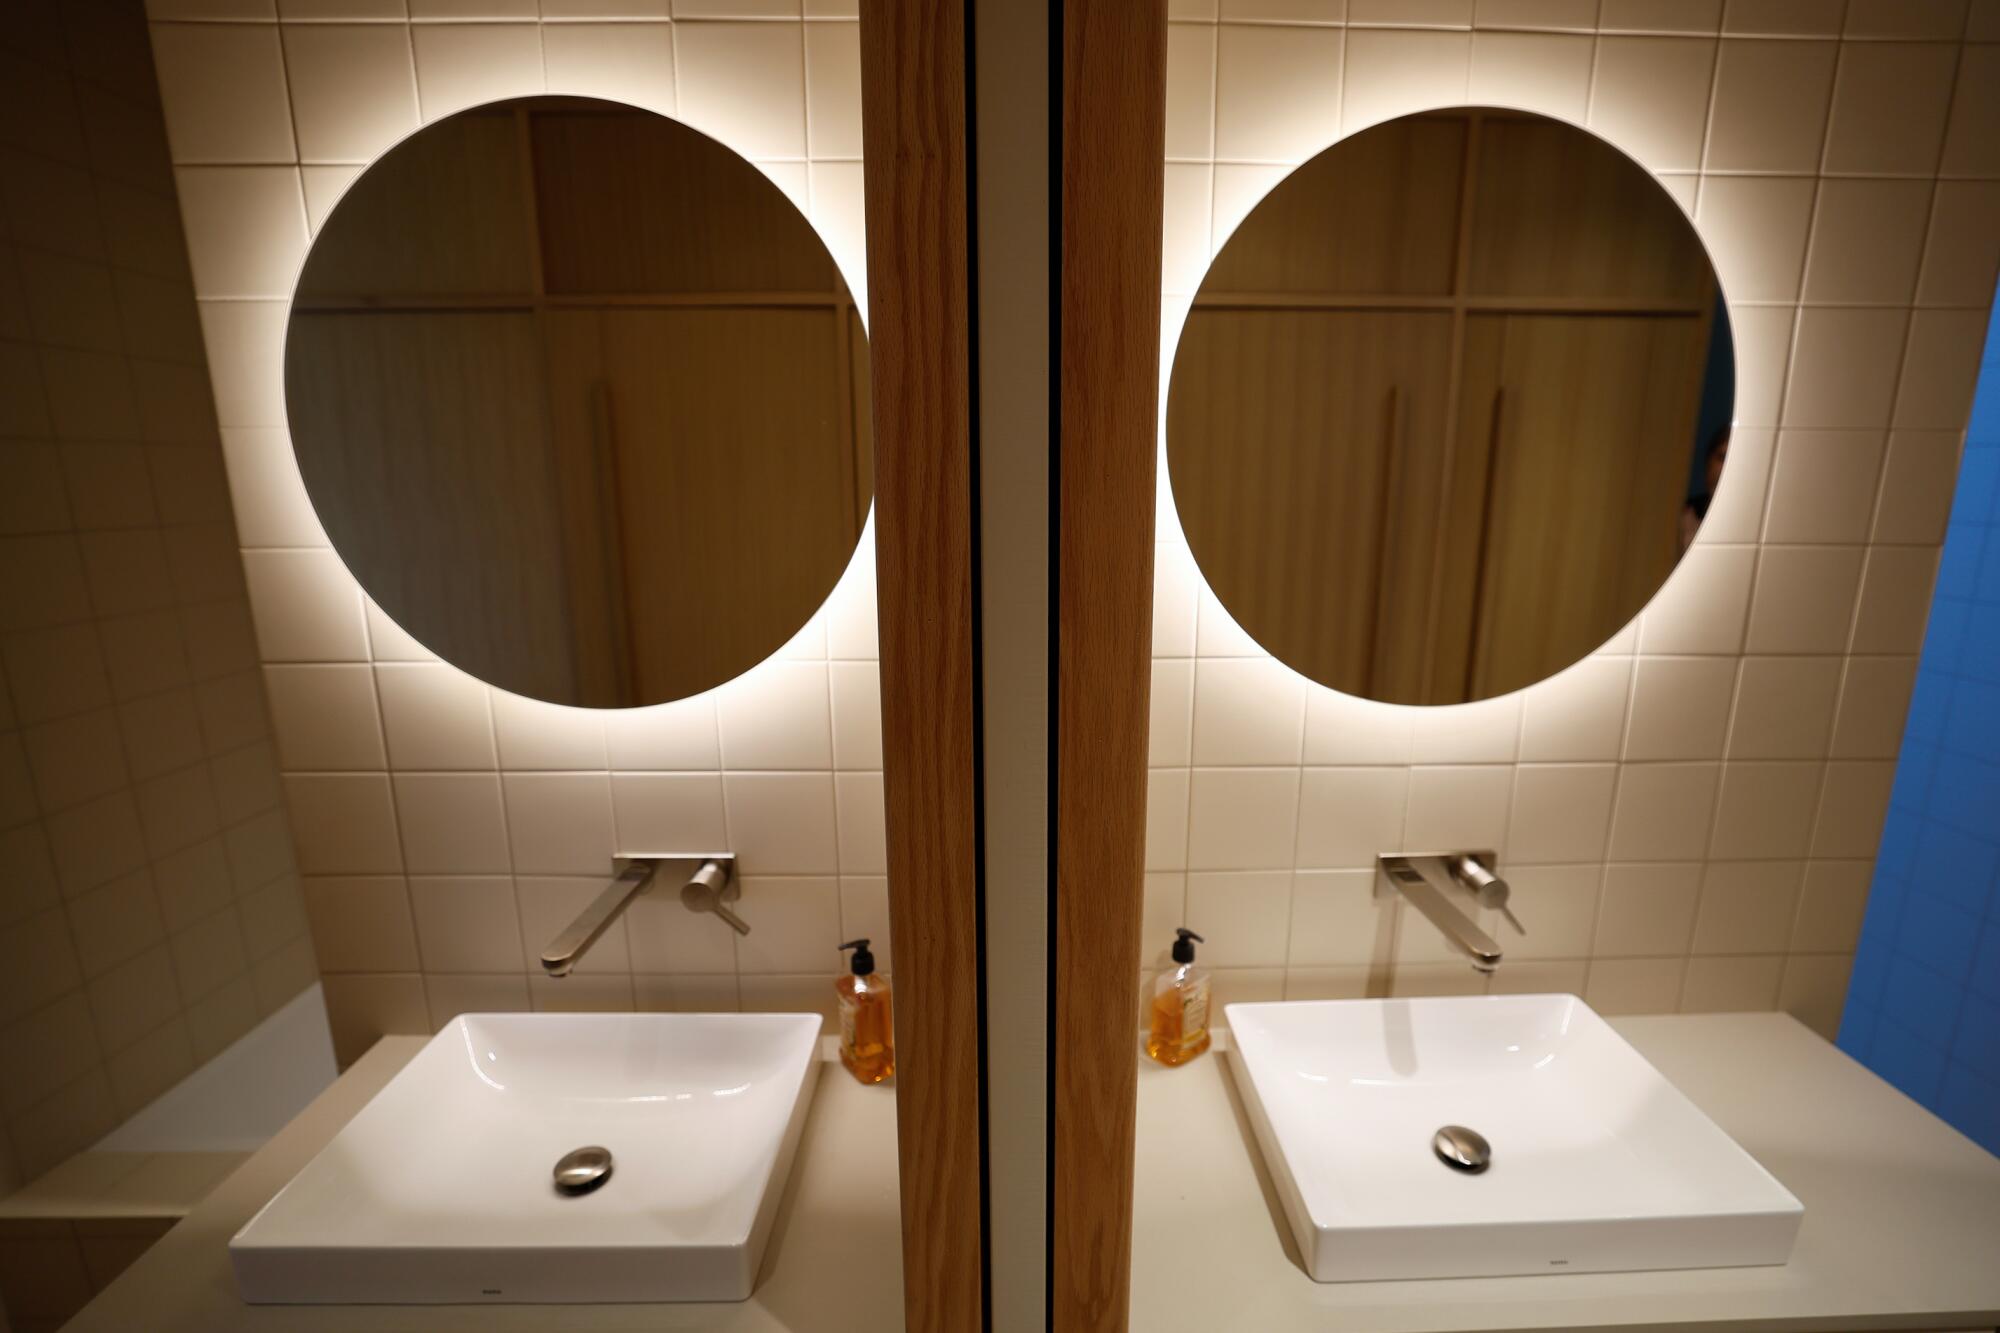 La lumière brille derrière un miroir au-dessus d'un évier, réfléchie dans un miroir.